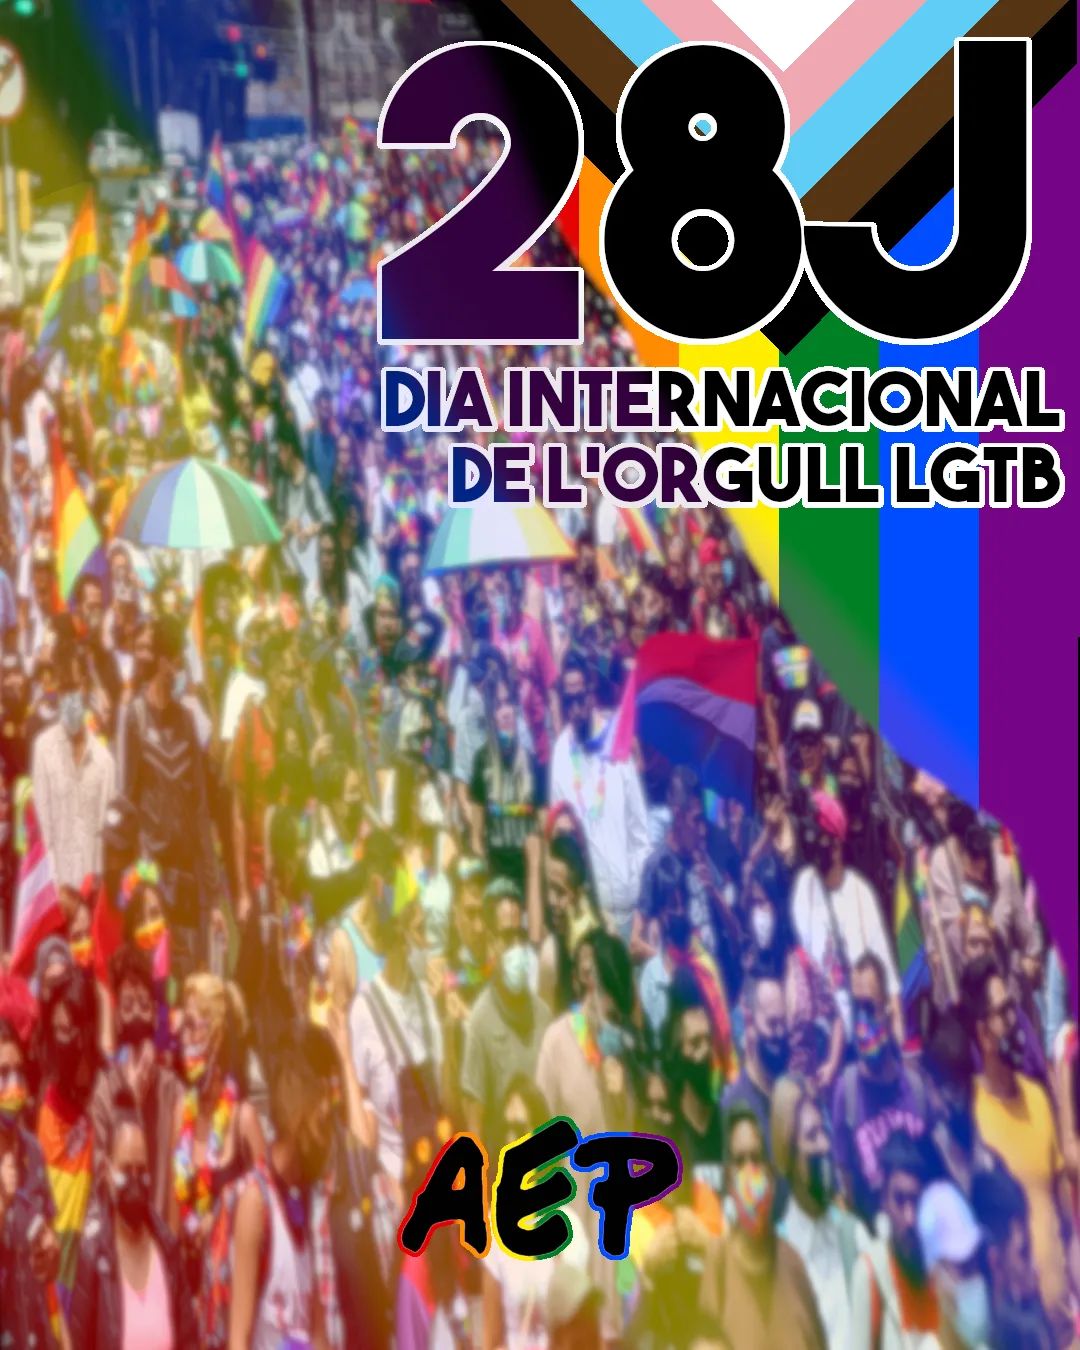 Avui, en honor al #28J, dia internacional de l’Orgull #LGTB, en nom de l’AEP volem donar tot el nostre suport a aquelles que formeu part del col•lectiu

En el panorama polític actual hem de ser conscients que hem de seguir lluitant dia rere dia per aconseguir un futur lliure de discriminació per raó d’identitat de gènere i orientació sexual, la qual cosa ens omple de ràbia i ens obliga a reflexionar sobre el tipus de context socio-polític sota el qual vivim.

Volem recordar també a totes aquelles persones que van pavimentar el recorregut per la lluita #LGTB i ens van donar veu. No hem d’oblidar que estem aquí només gràcies a moltes dones trans negres i llatines. 

Creiem que encara ens queda molt camí per endevant, però que cal també estar orgullosos de tota la feina que s’ha aconseguit, sobretot gràcies a la militància activa i a l’associacionisme. 

Per altra banda, desitgem que quedi constància del nostre rebuig cap a la mercantilització de la comunitat #LGTB: no som objectes que les empreses puguin utilitzar per rentar la seva imatge corporativa. 

Des de l’AEP seguirem lluitant per un futur on les persones #LGTB se sentin segures i siguin garantides els mateixos drets que les persones cisheterosexuals, fet que avui dia no es dona a la majoria de regions del món.